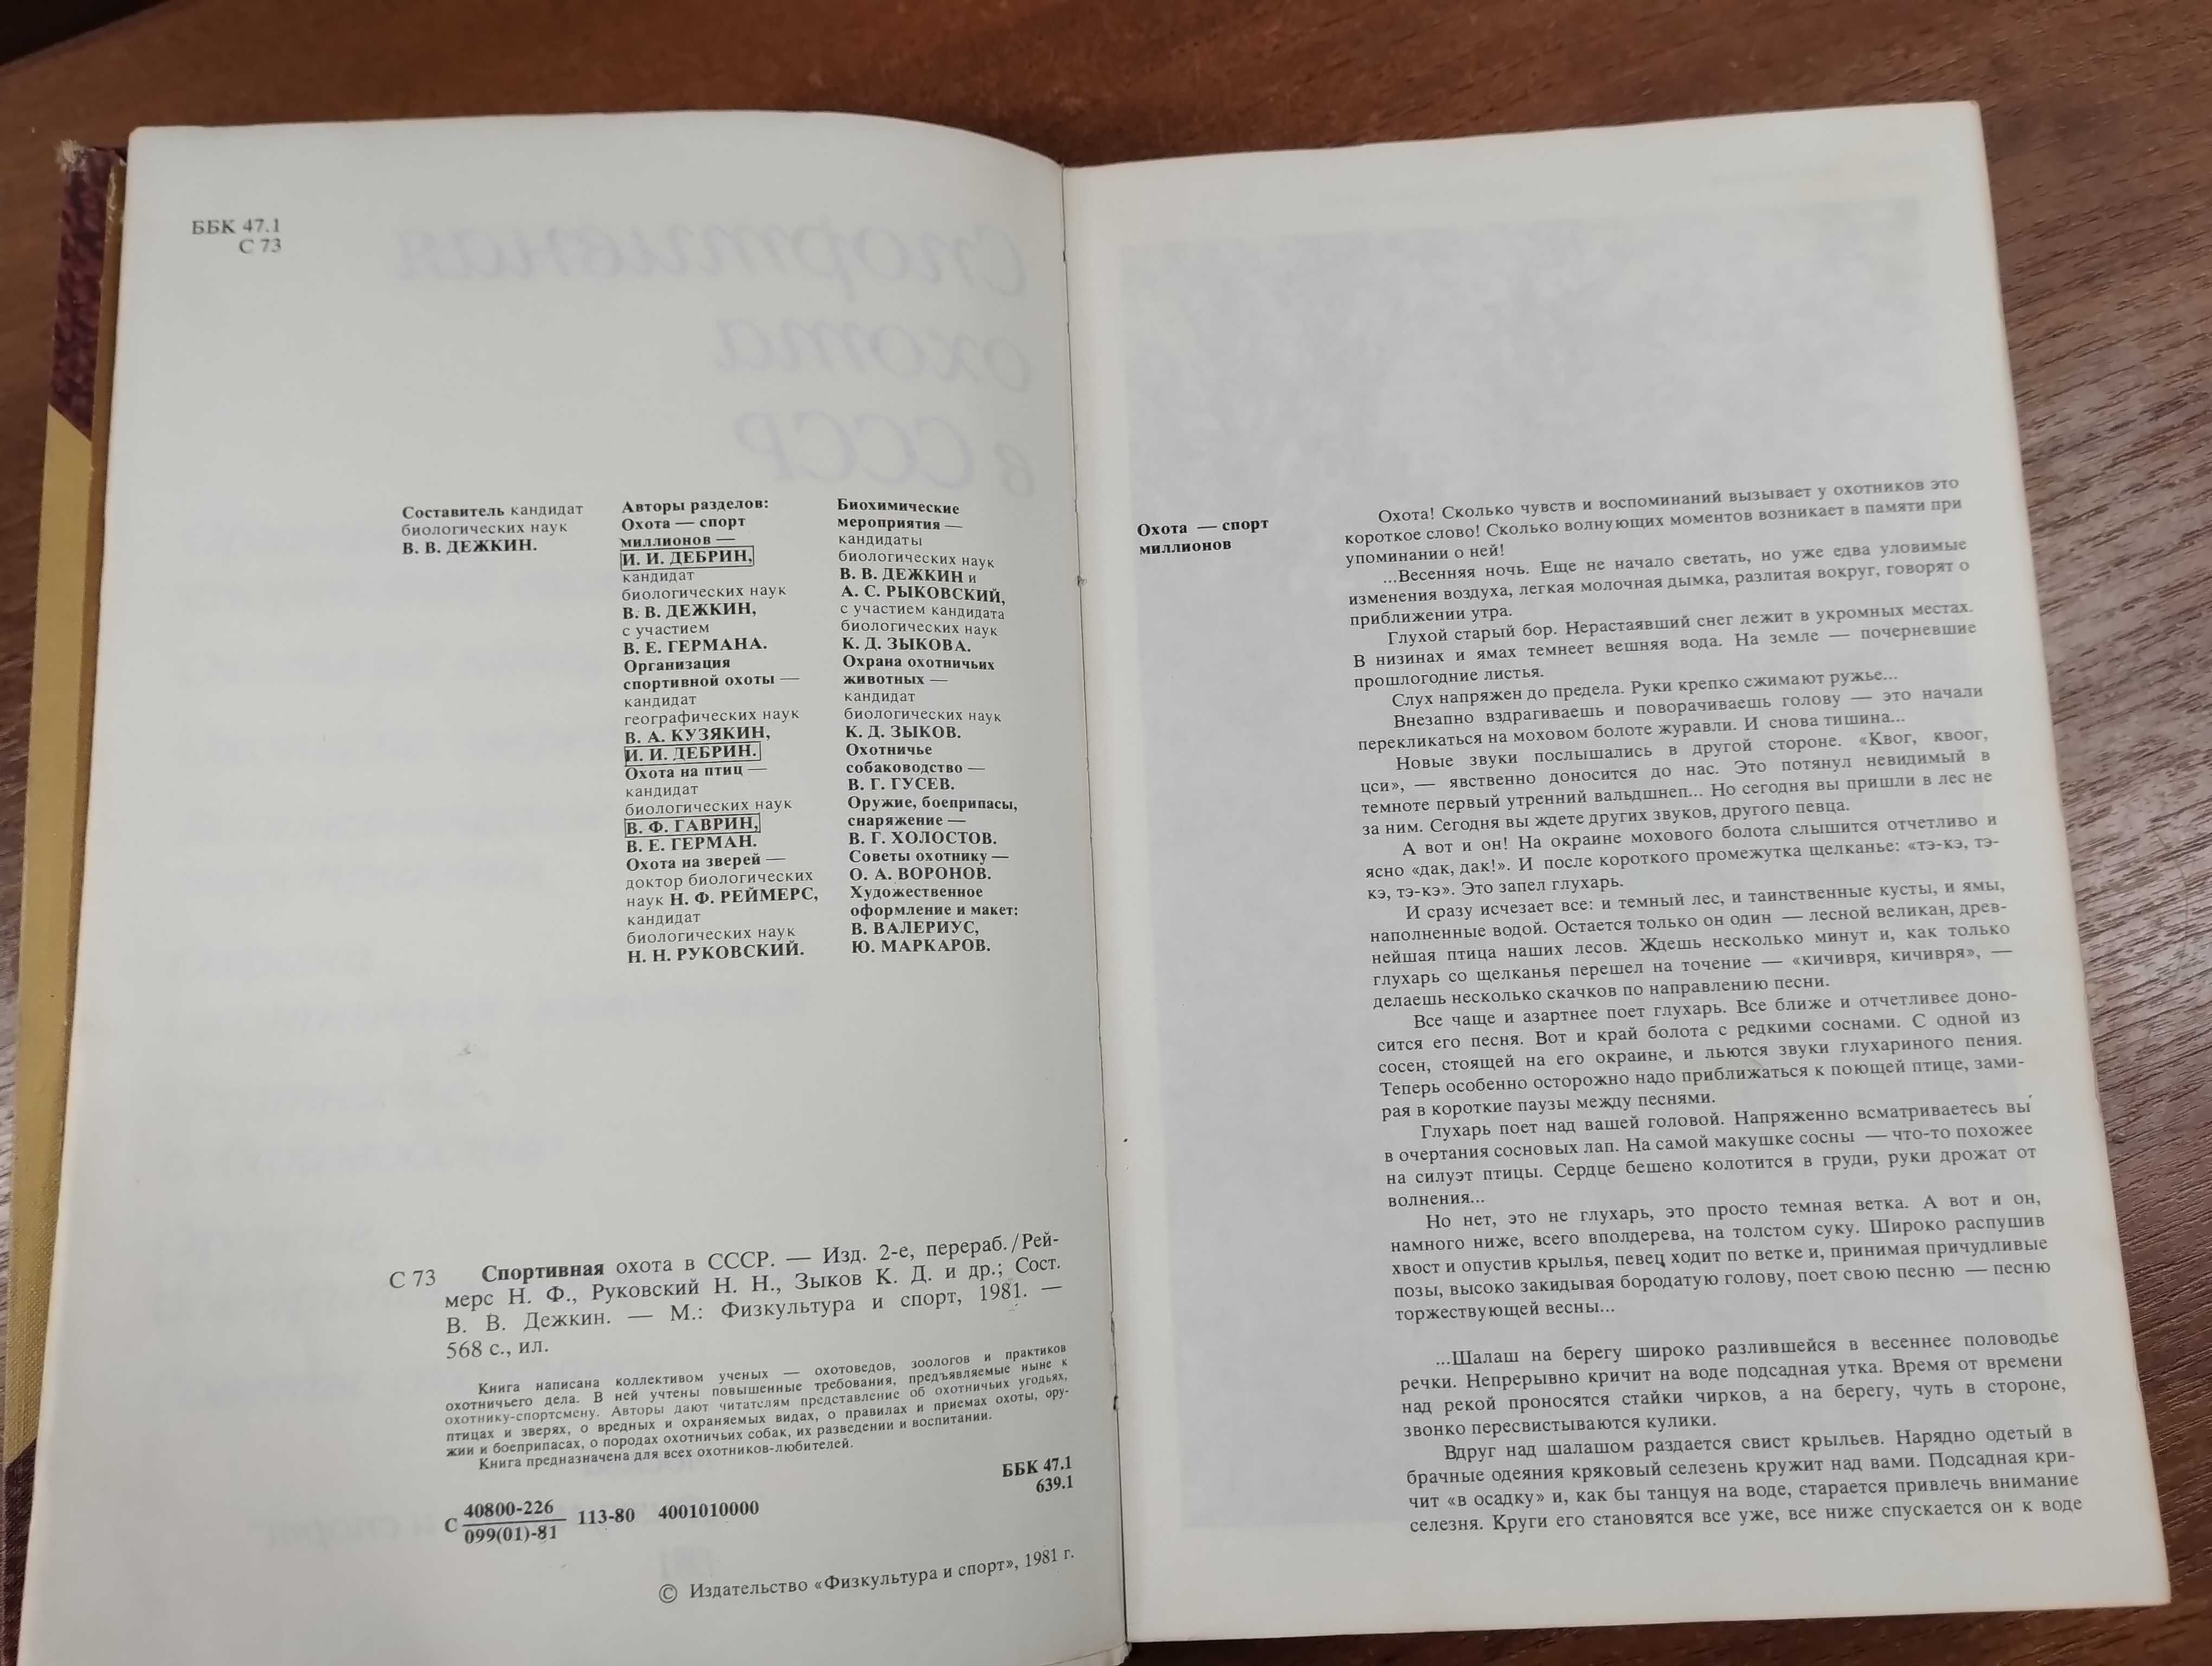 Спортивная охота в СССР (Реймерс, изд. 2-ое, 1981 г.)